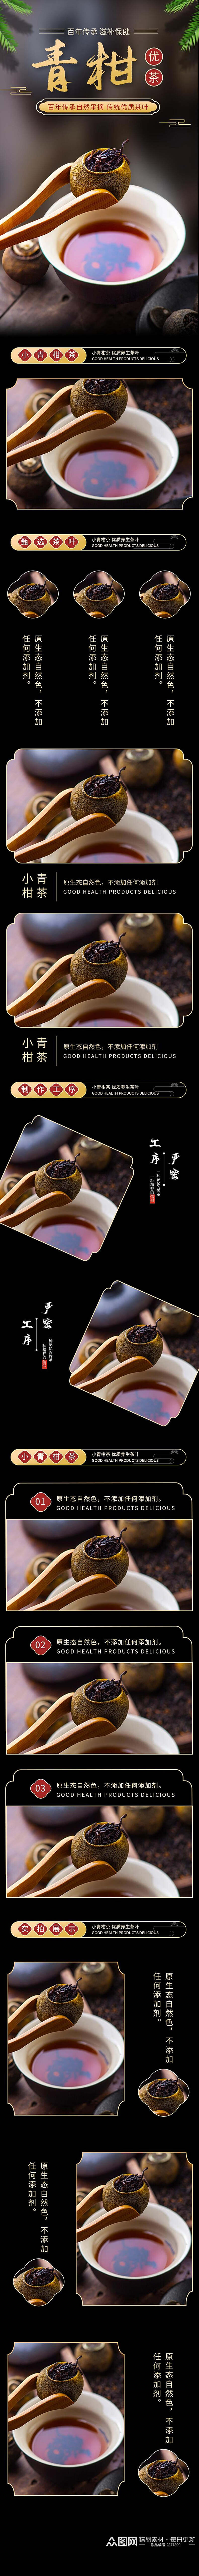 百年传承青柑优茶食品电商详情页素材